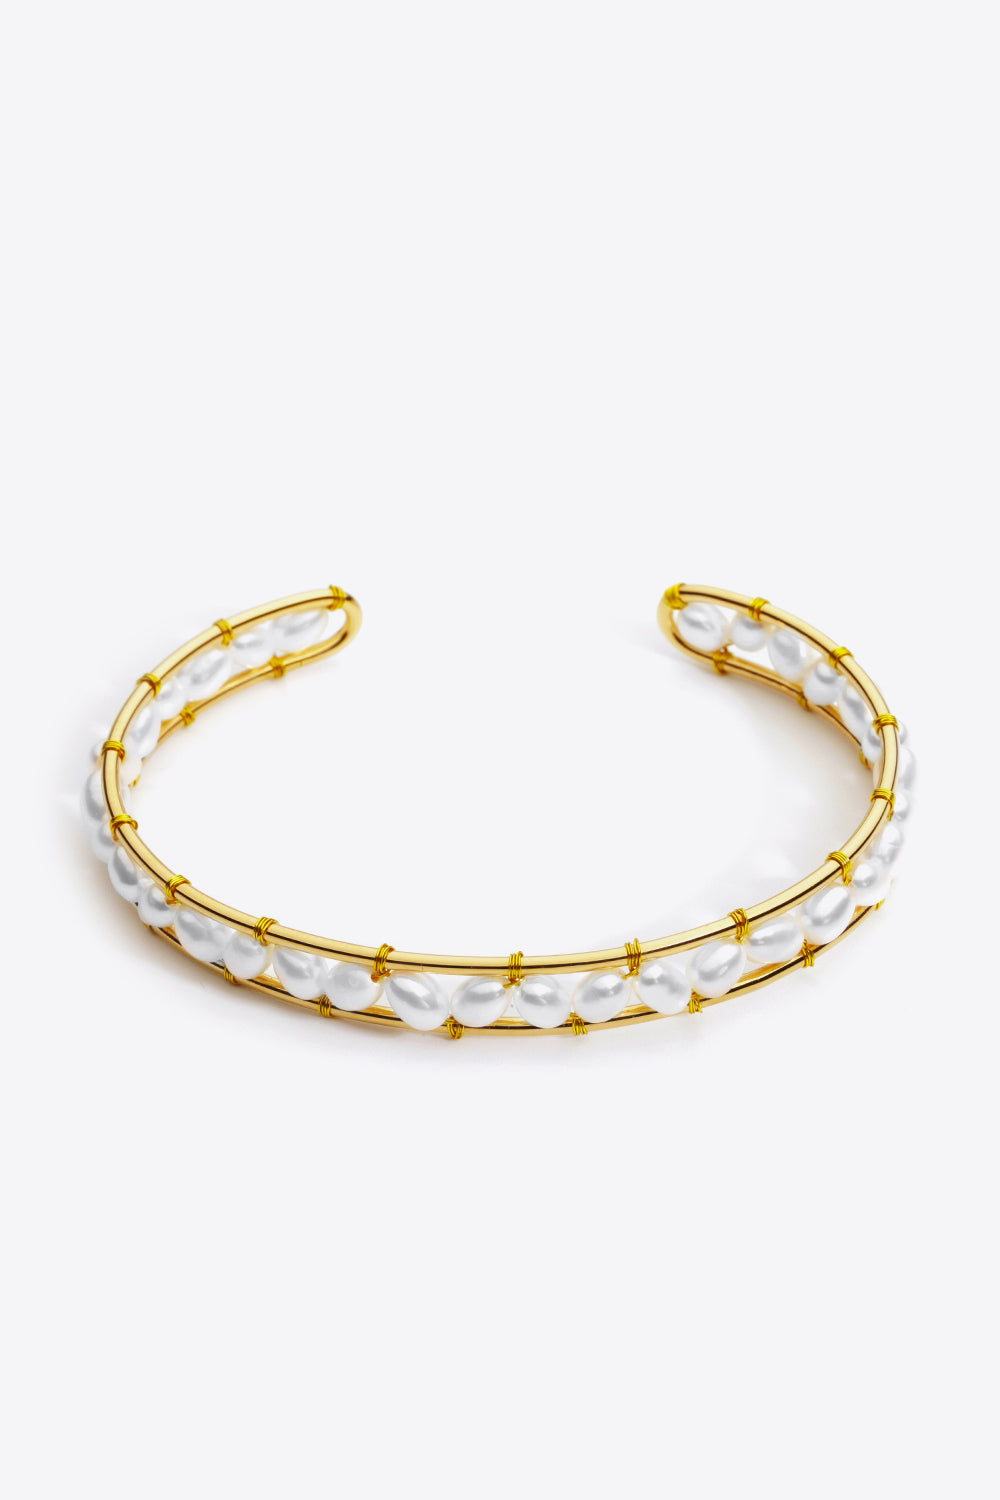 Freshwater Pearl Copper Open Bracelet - Gold / One Size - Women’s Jewelry - Bracelets - 2 - 2024